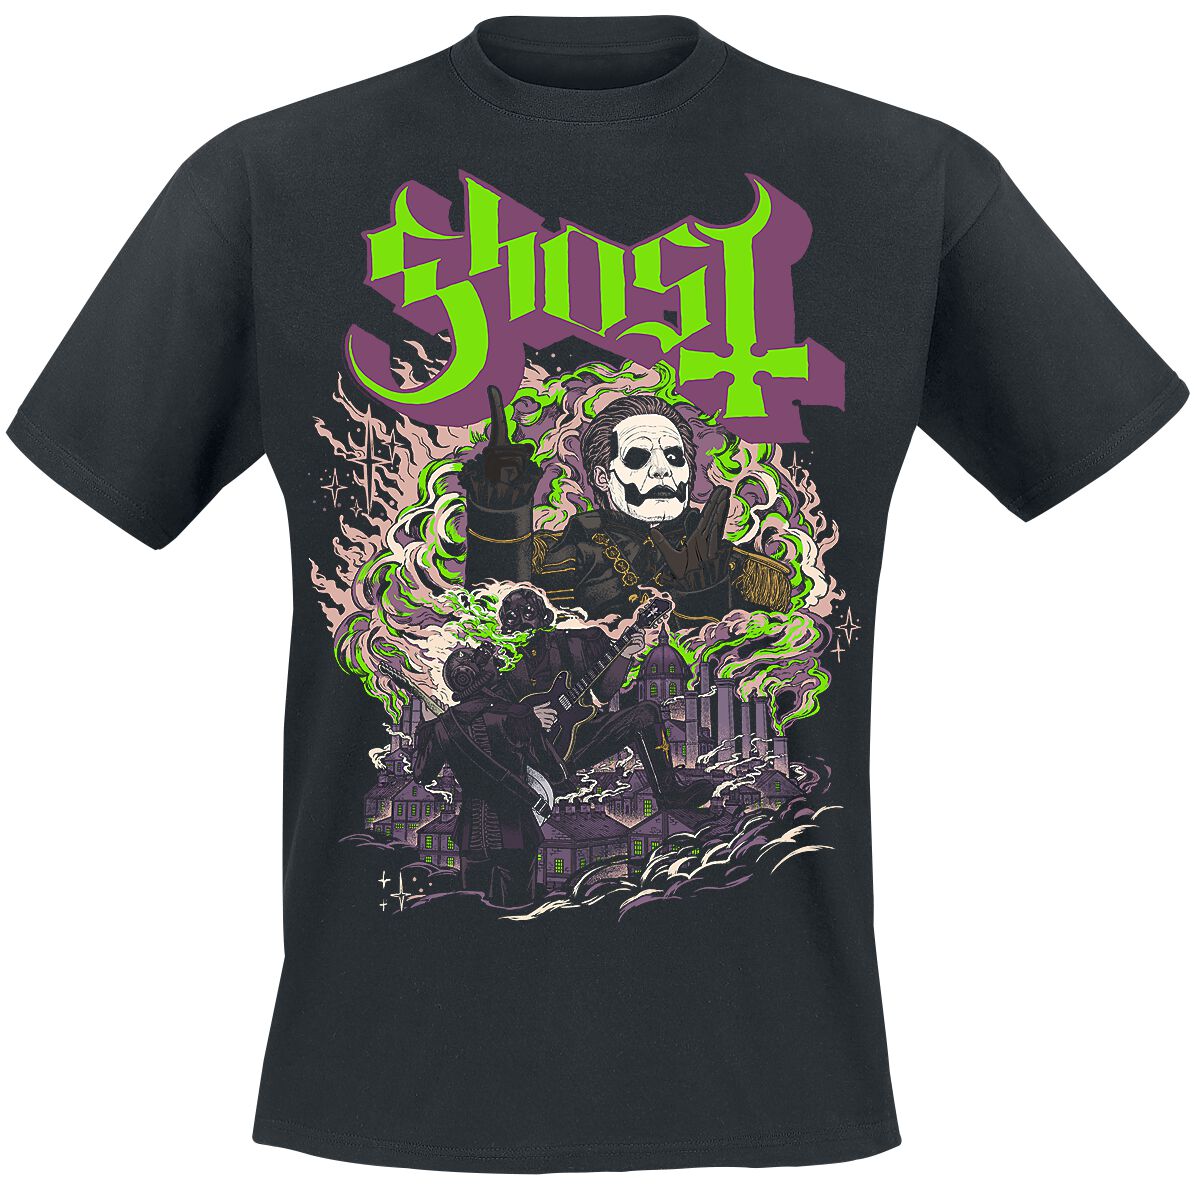 Ghost T-Shirt - FOG - YK - S bis 4XL - für Männer - Größe 3XL - schwarz  - Lizenziertes Merchandise!